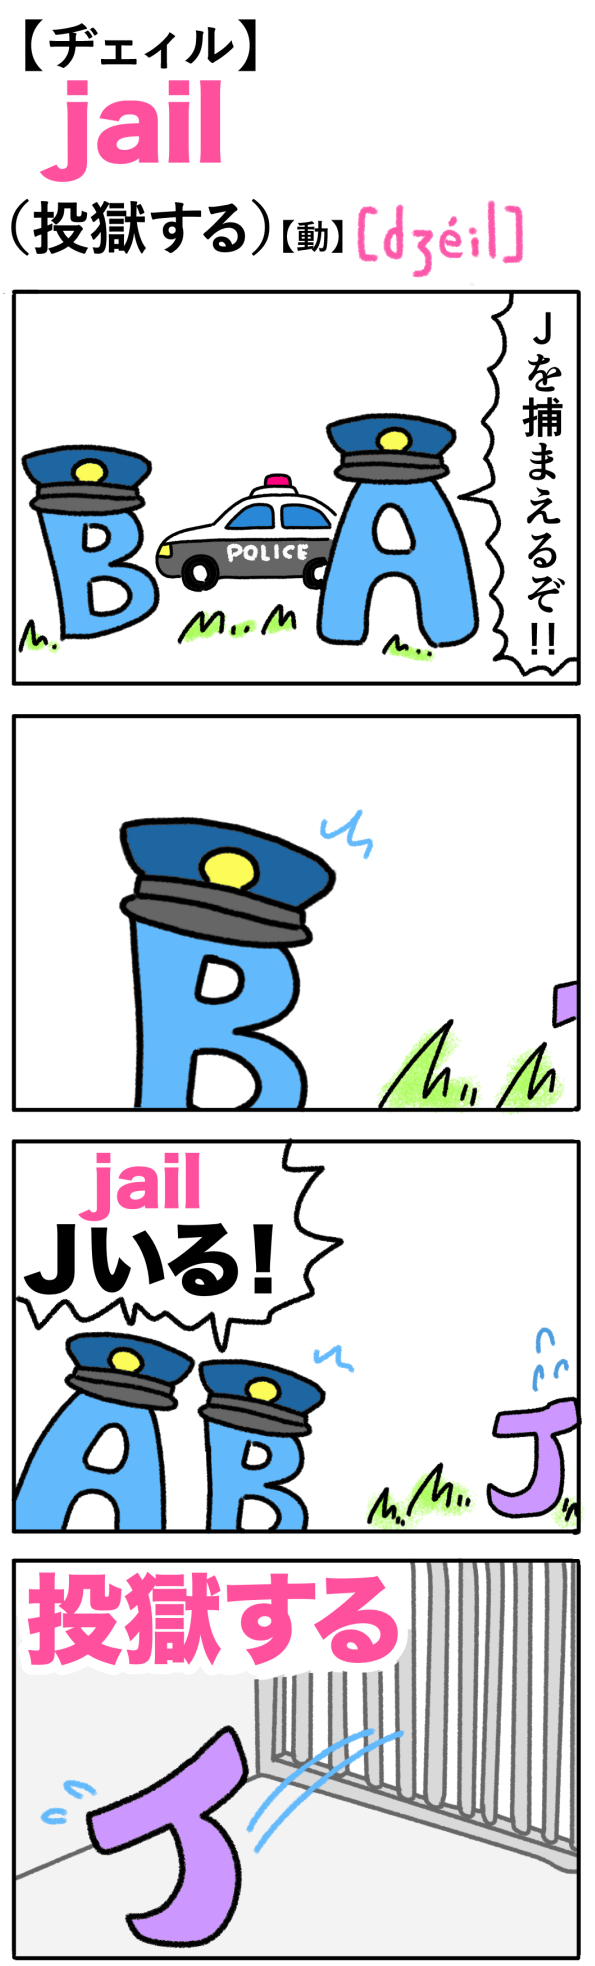 jail（投獄する）の語呂合わせ英単語